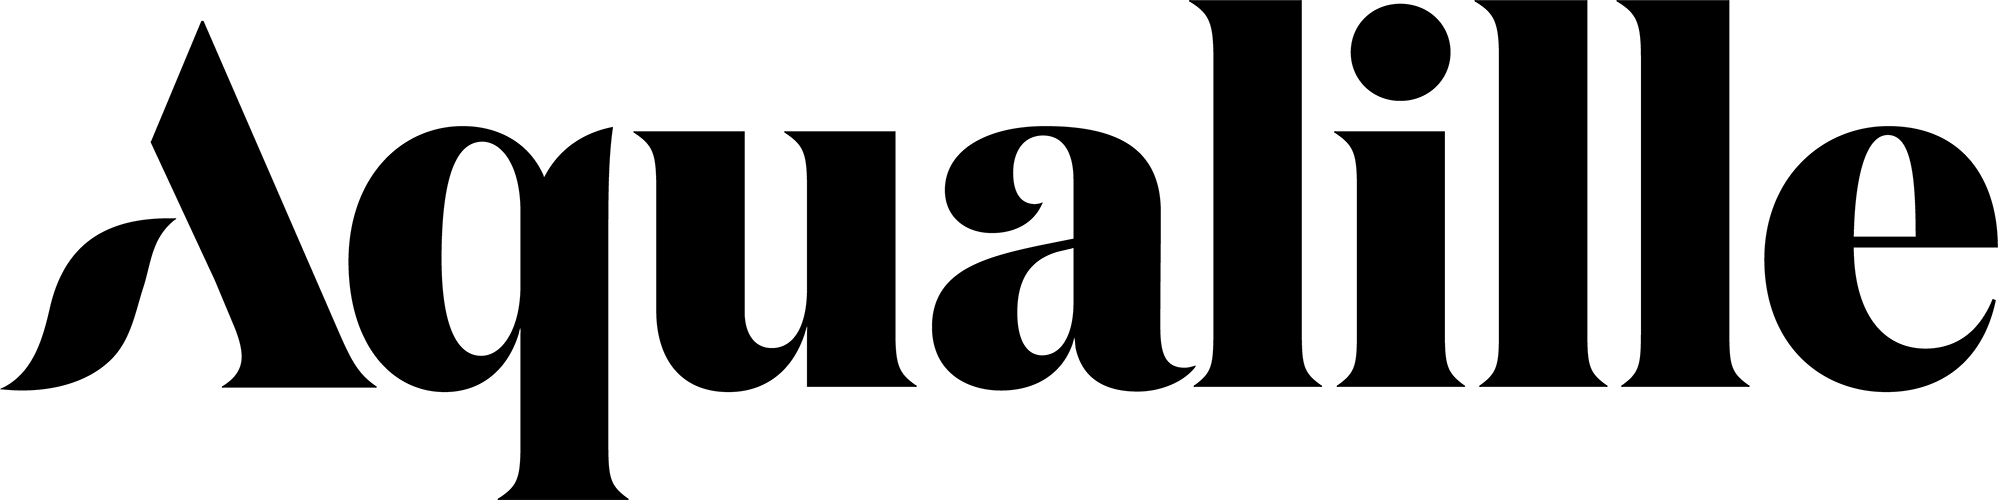 Aqualille black letter logo